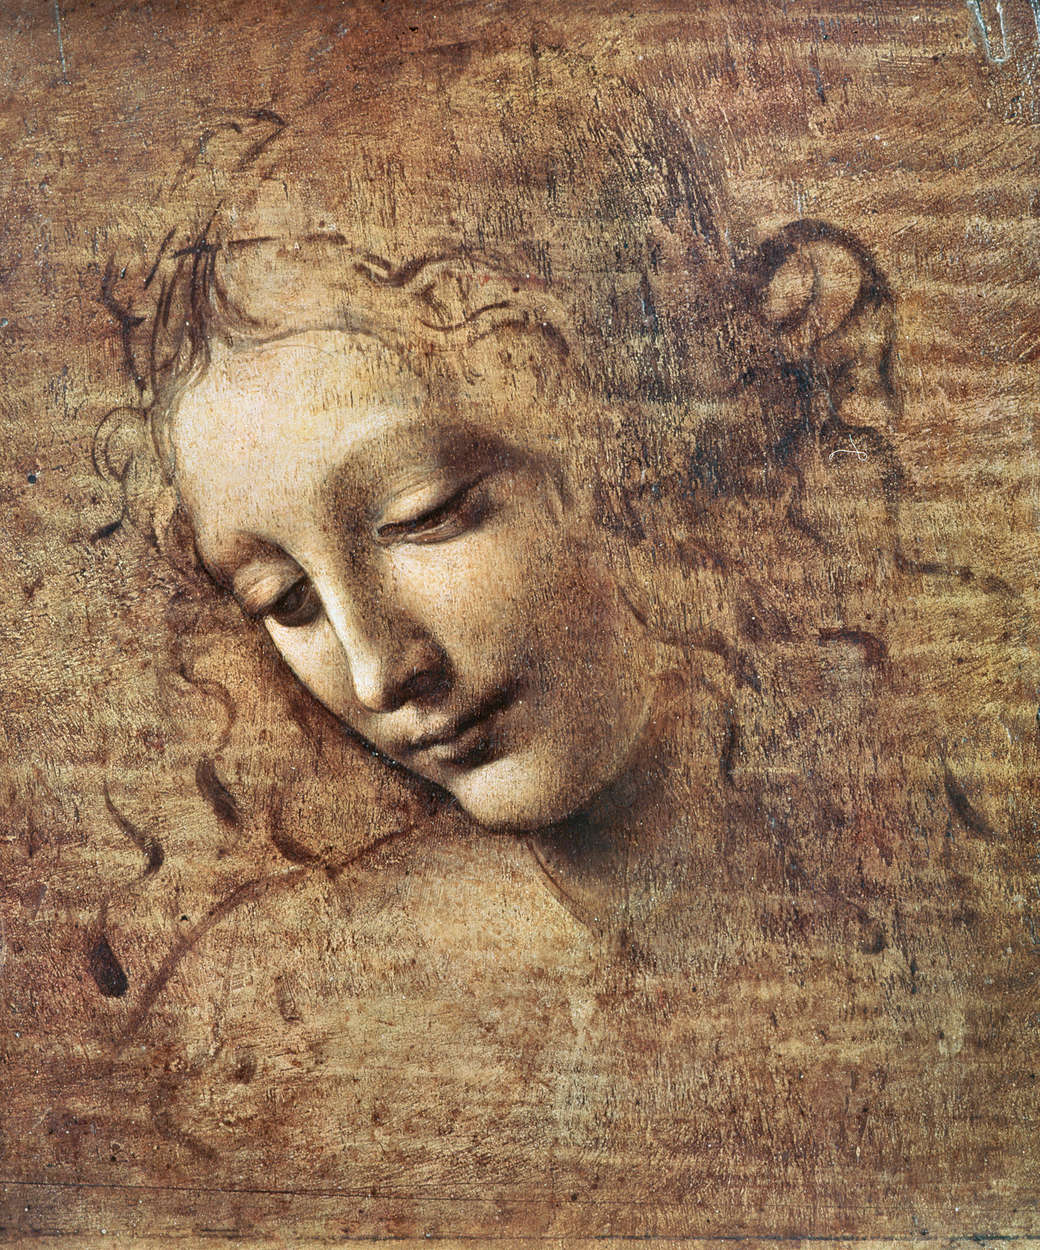             Papier peint "Tête de jeune femme aux cheveux ébouriffés" de Léonard de Vinci
        